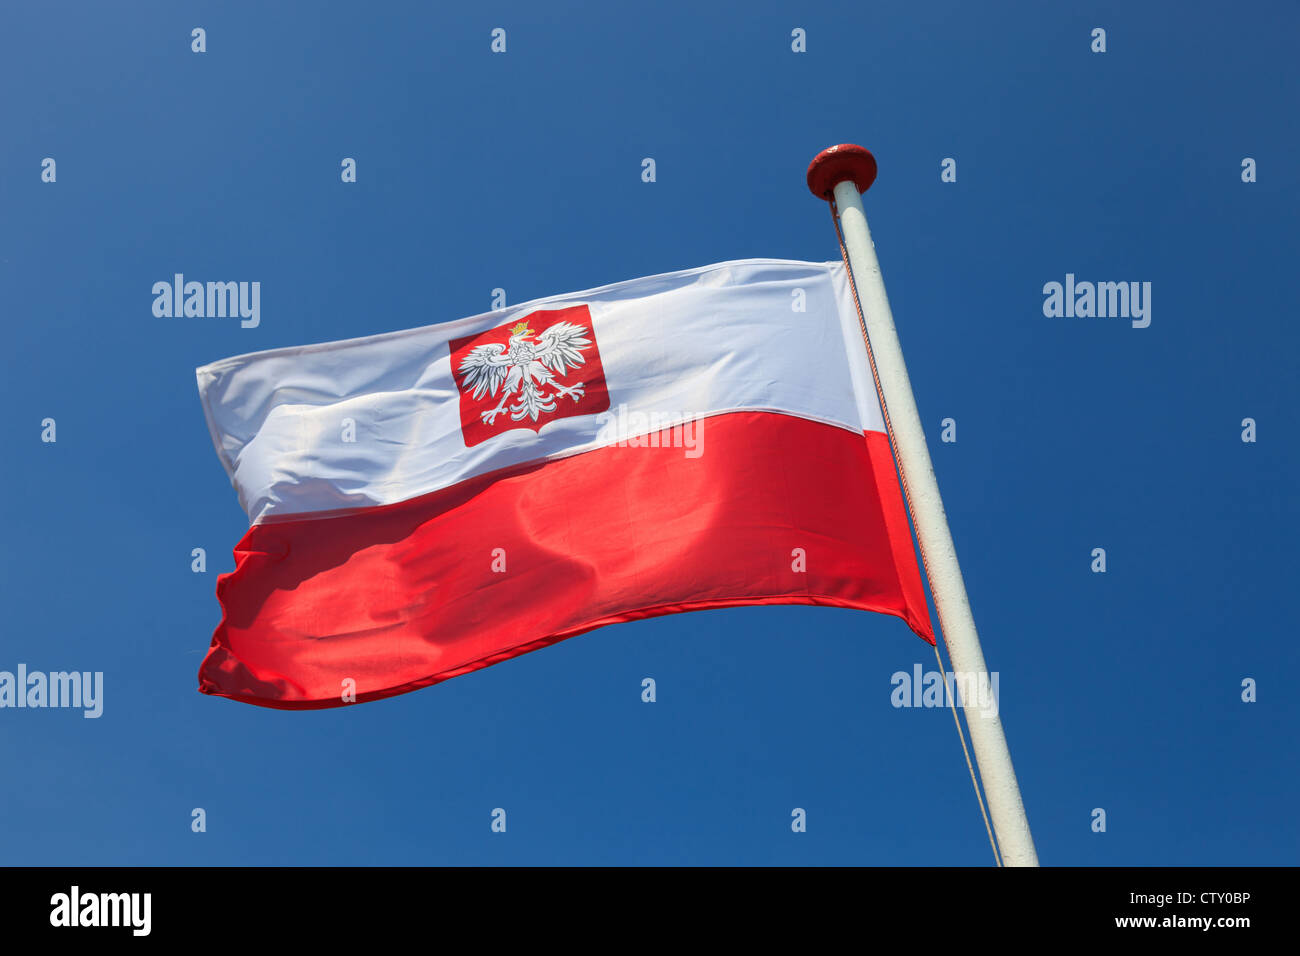 Drapeau national polonais dans le ciel. Banque D'Images